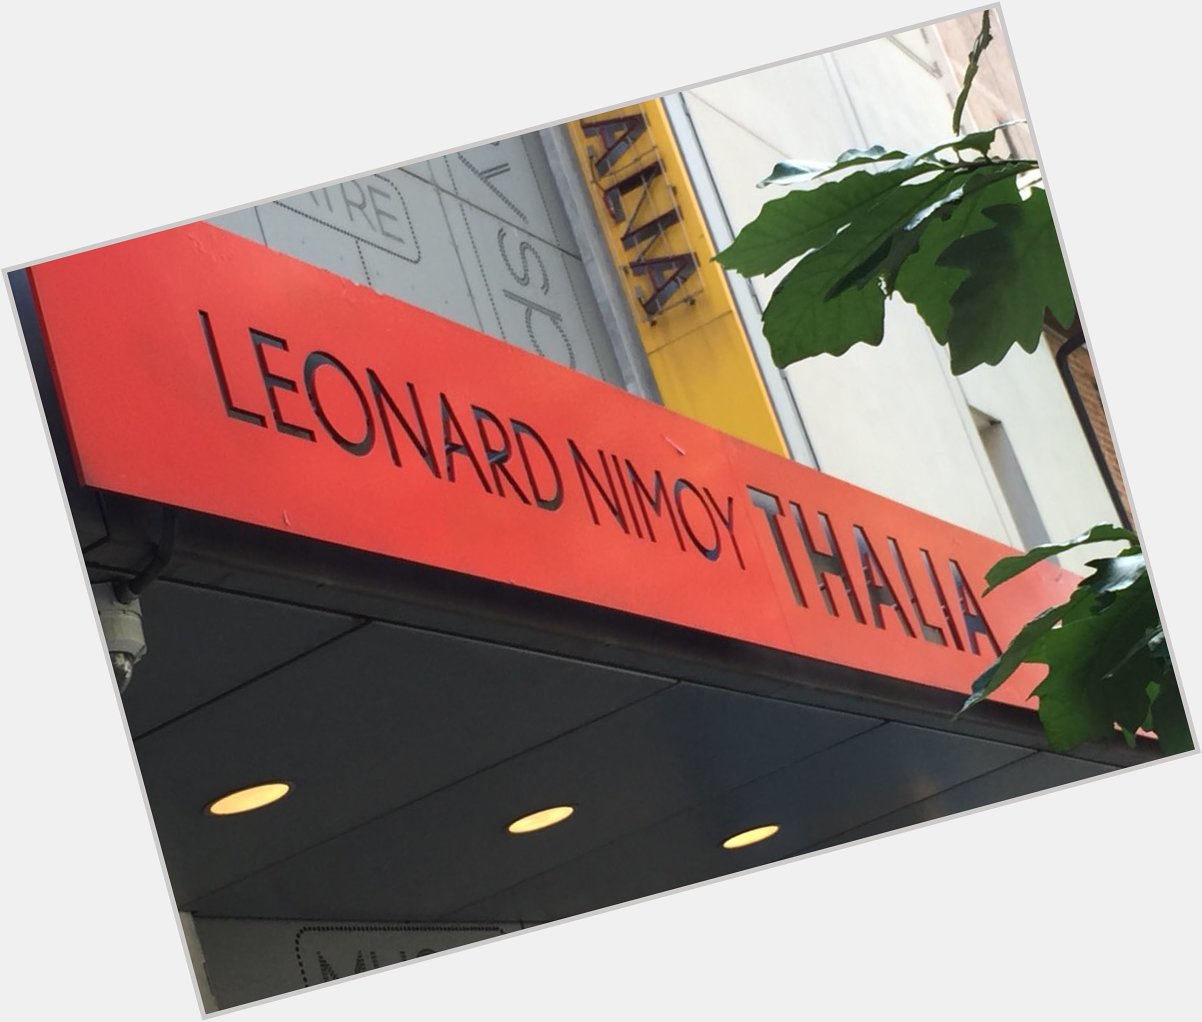 Happy Birthday Leonard Nimoy!!! 